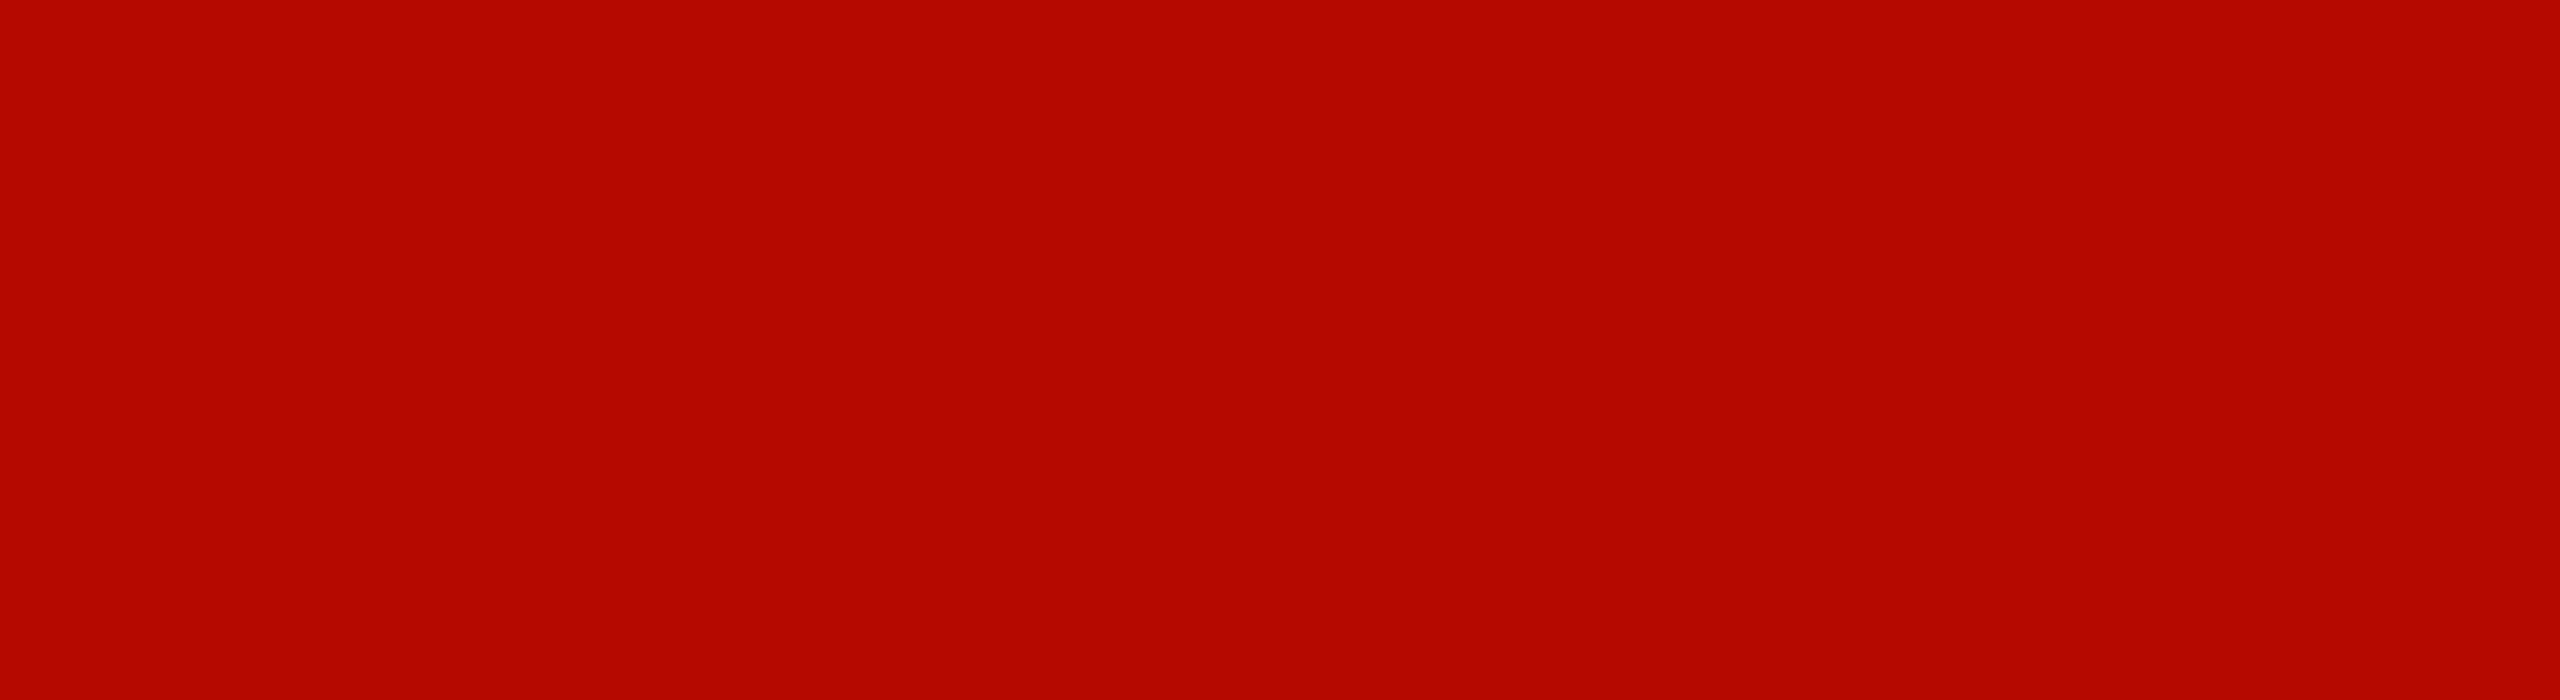 Develey Hintergrund Grillsoße Red Bean: rot